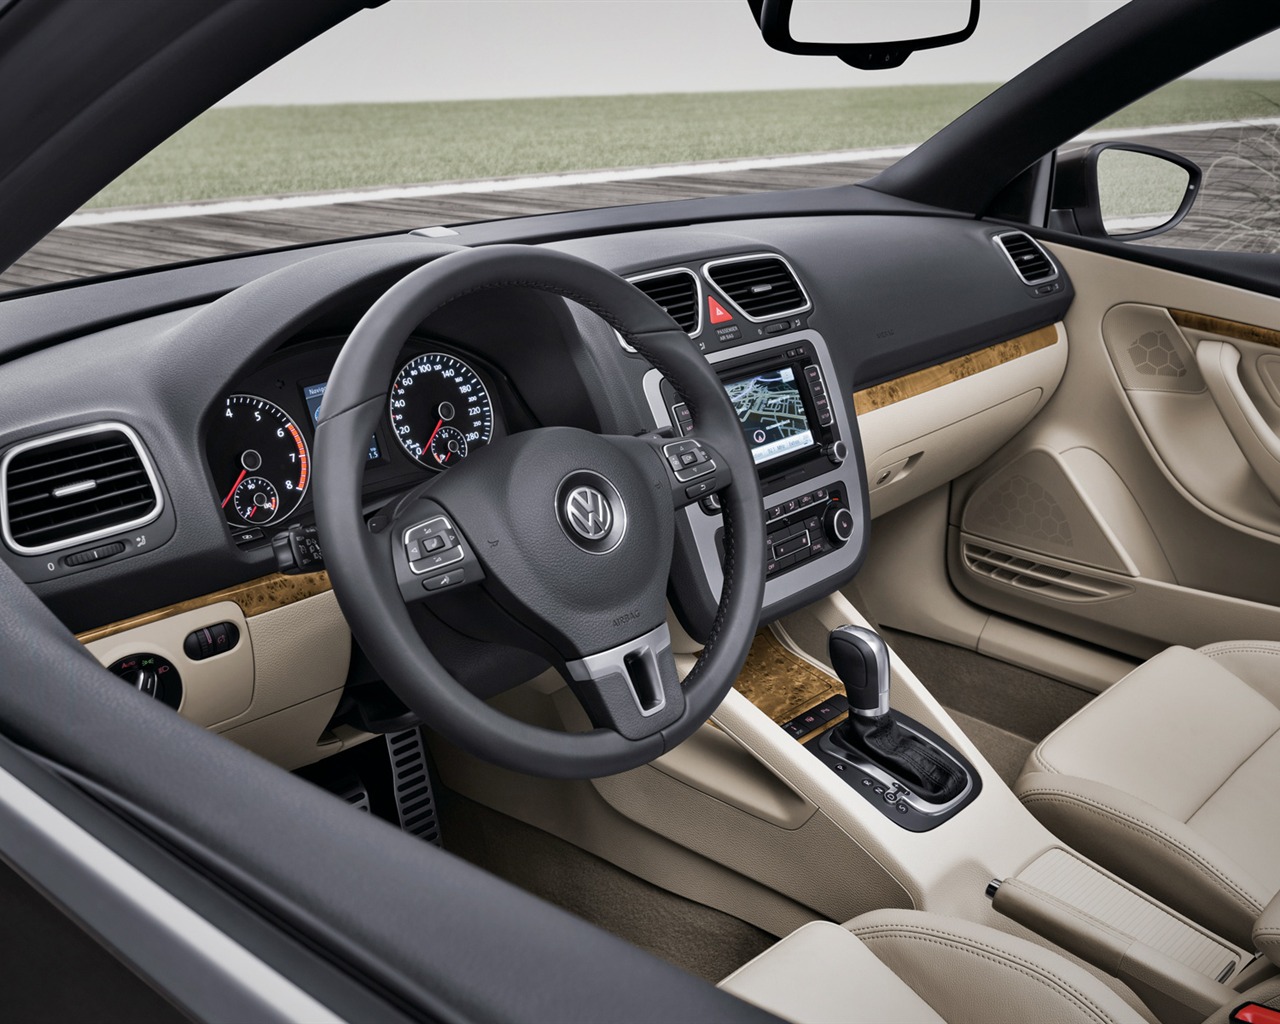 Volkswagen Eos - 2011 大众13 - 1280x1024